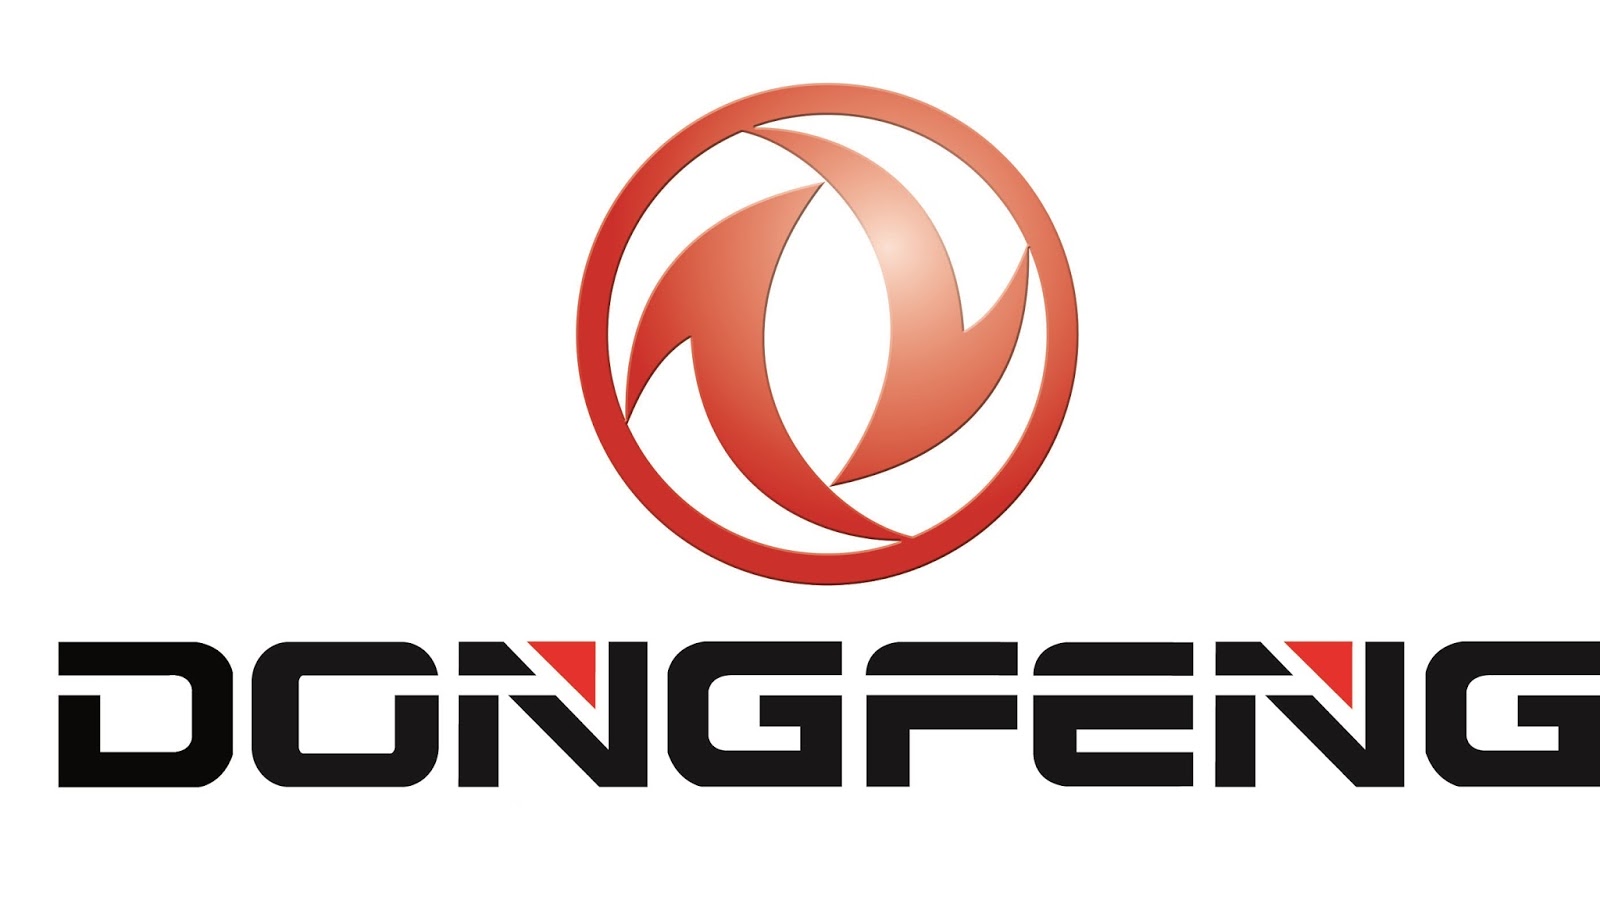 Logotipo DONGFENG